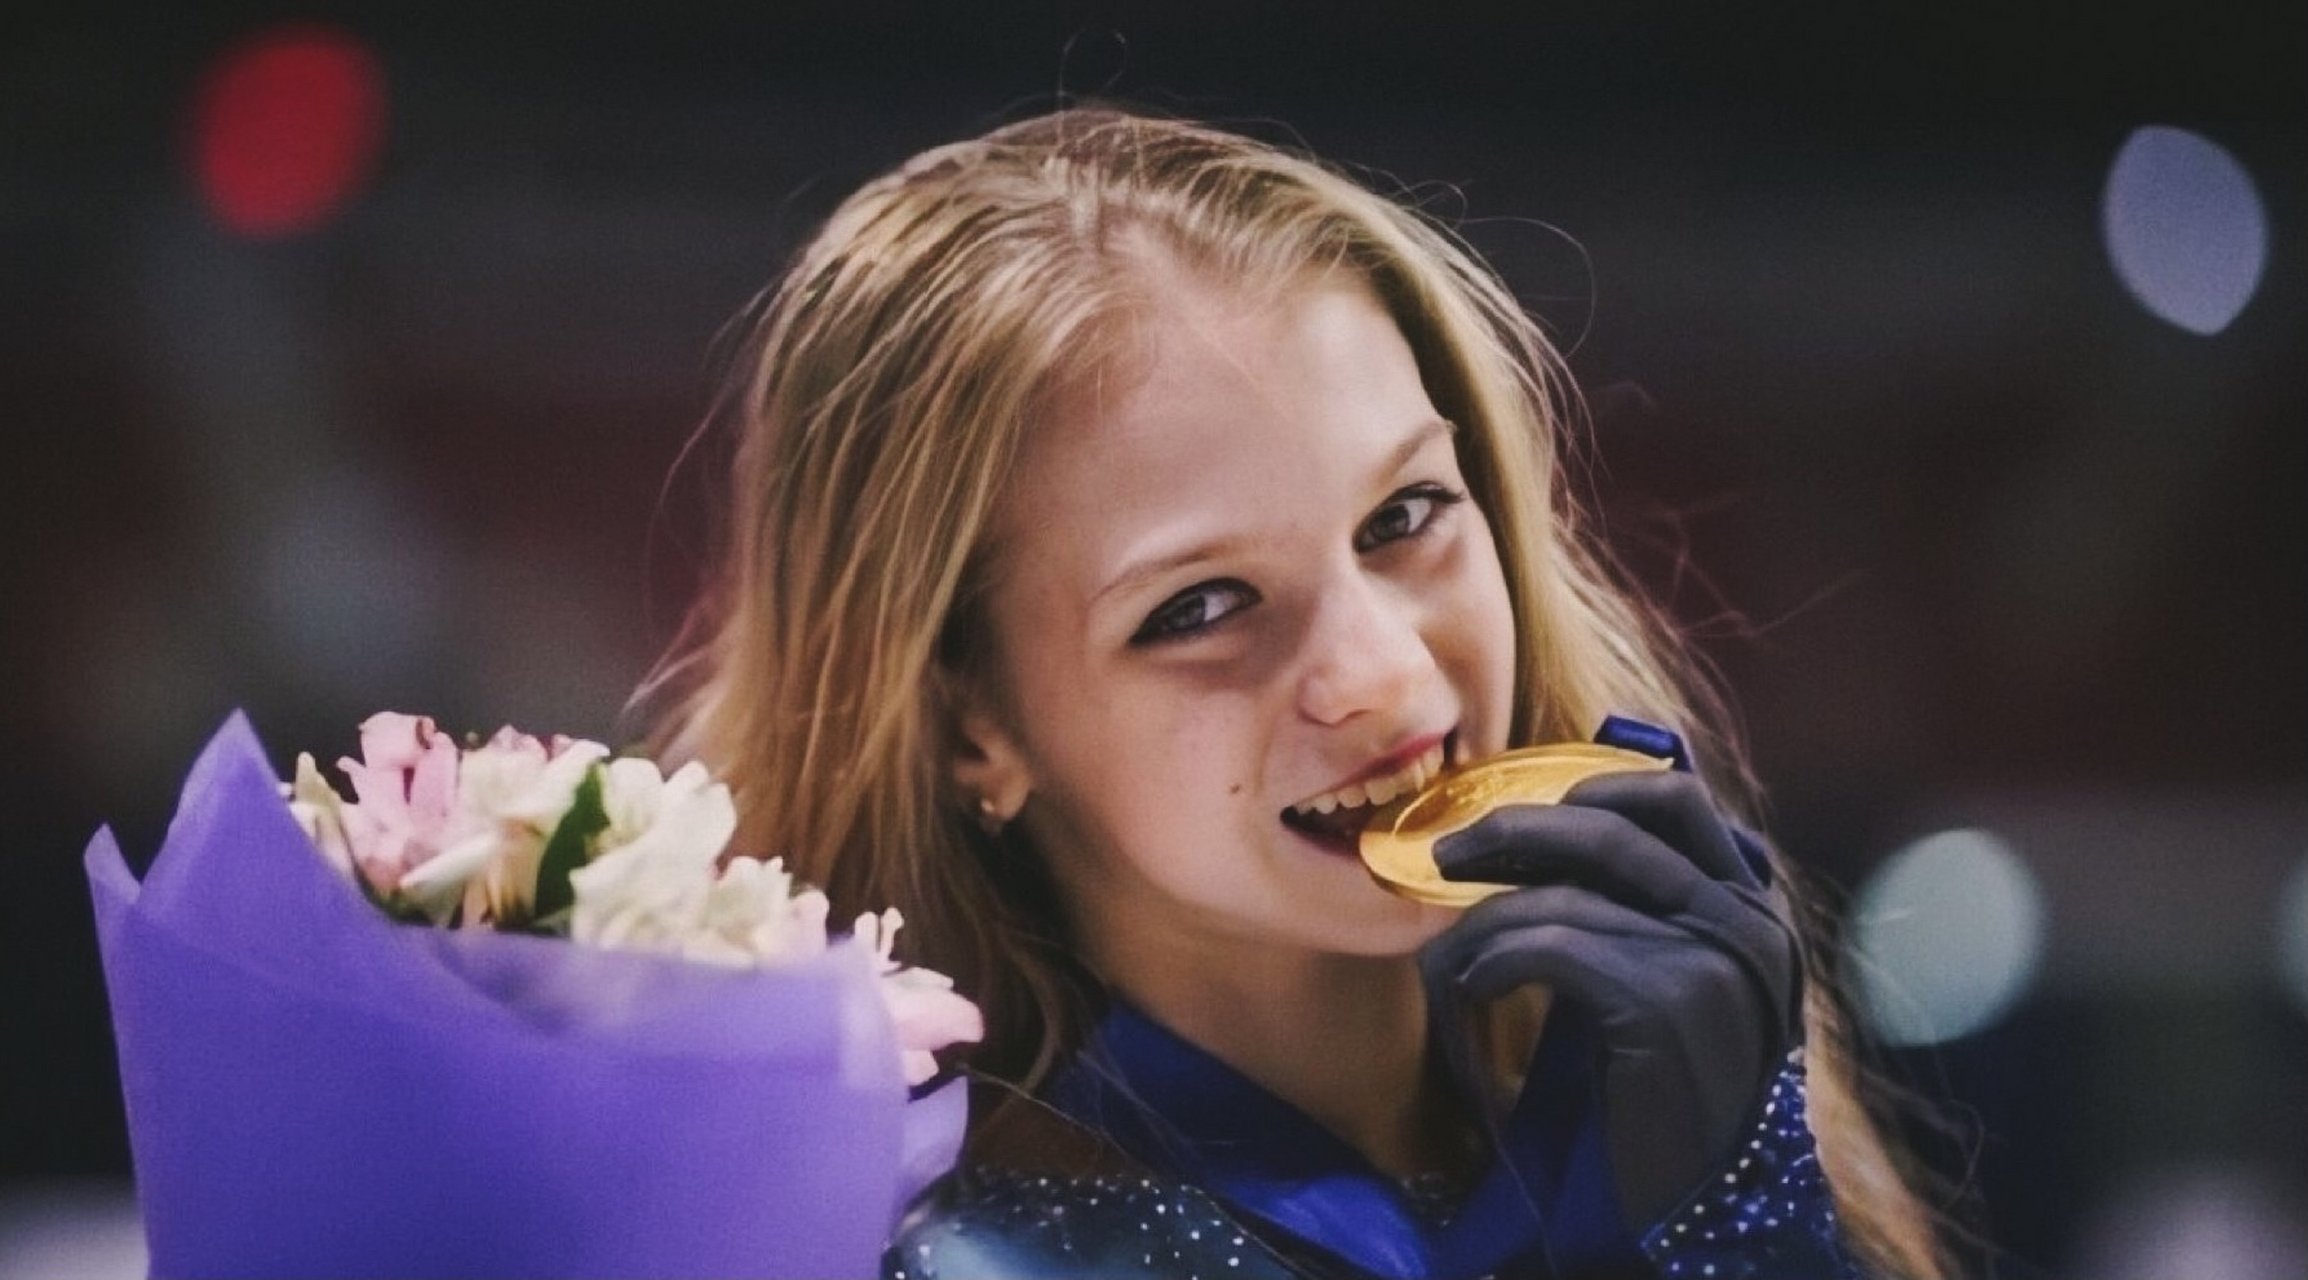 俄罗斯花滑运动员特鲁索娃,一个颜值逆天,还开创了花样滑冰女单四周跳